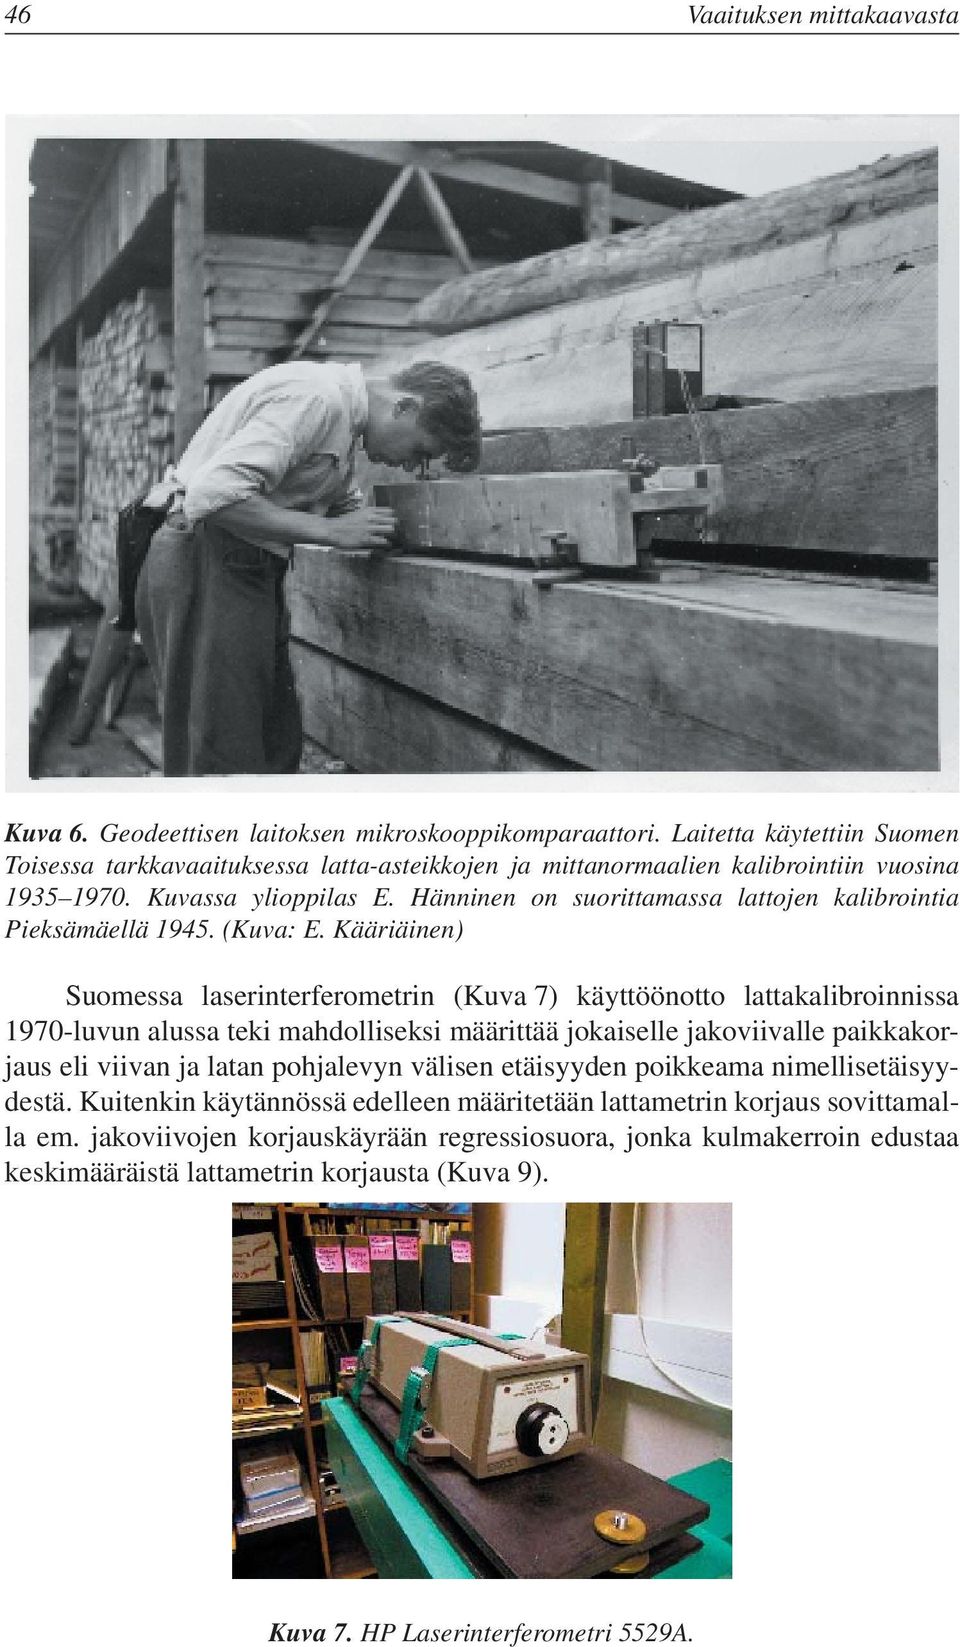 Hänninen on suorittamassa lattojen kalibrointia Pieksämäellä 1945. (Kuva: E.